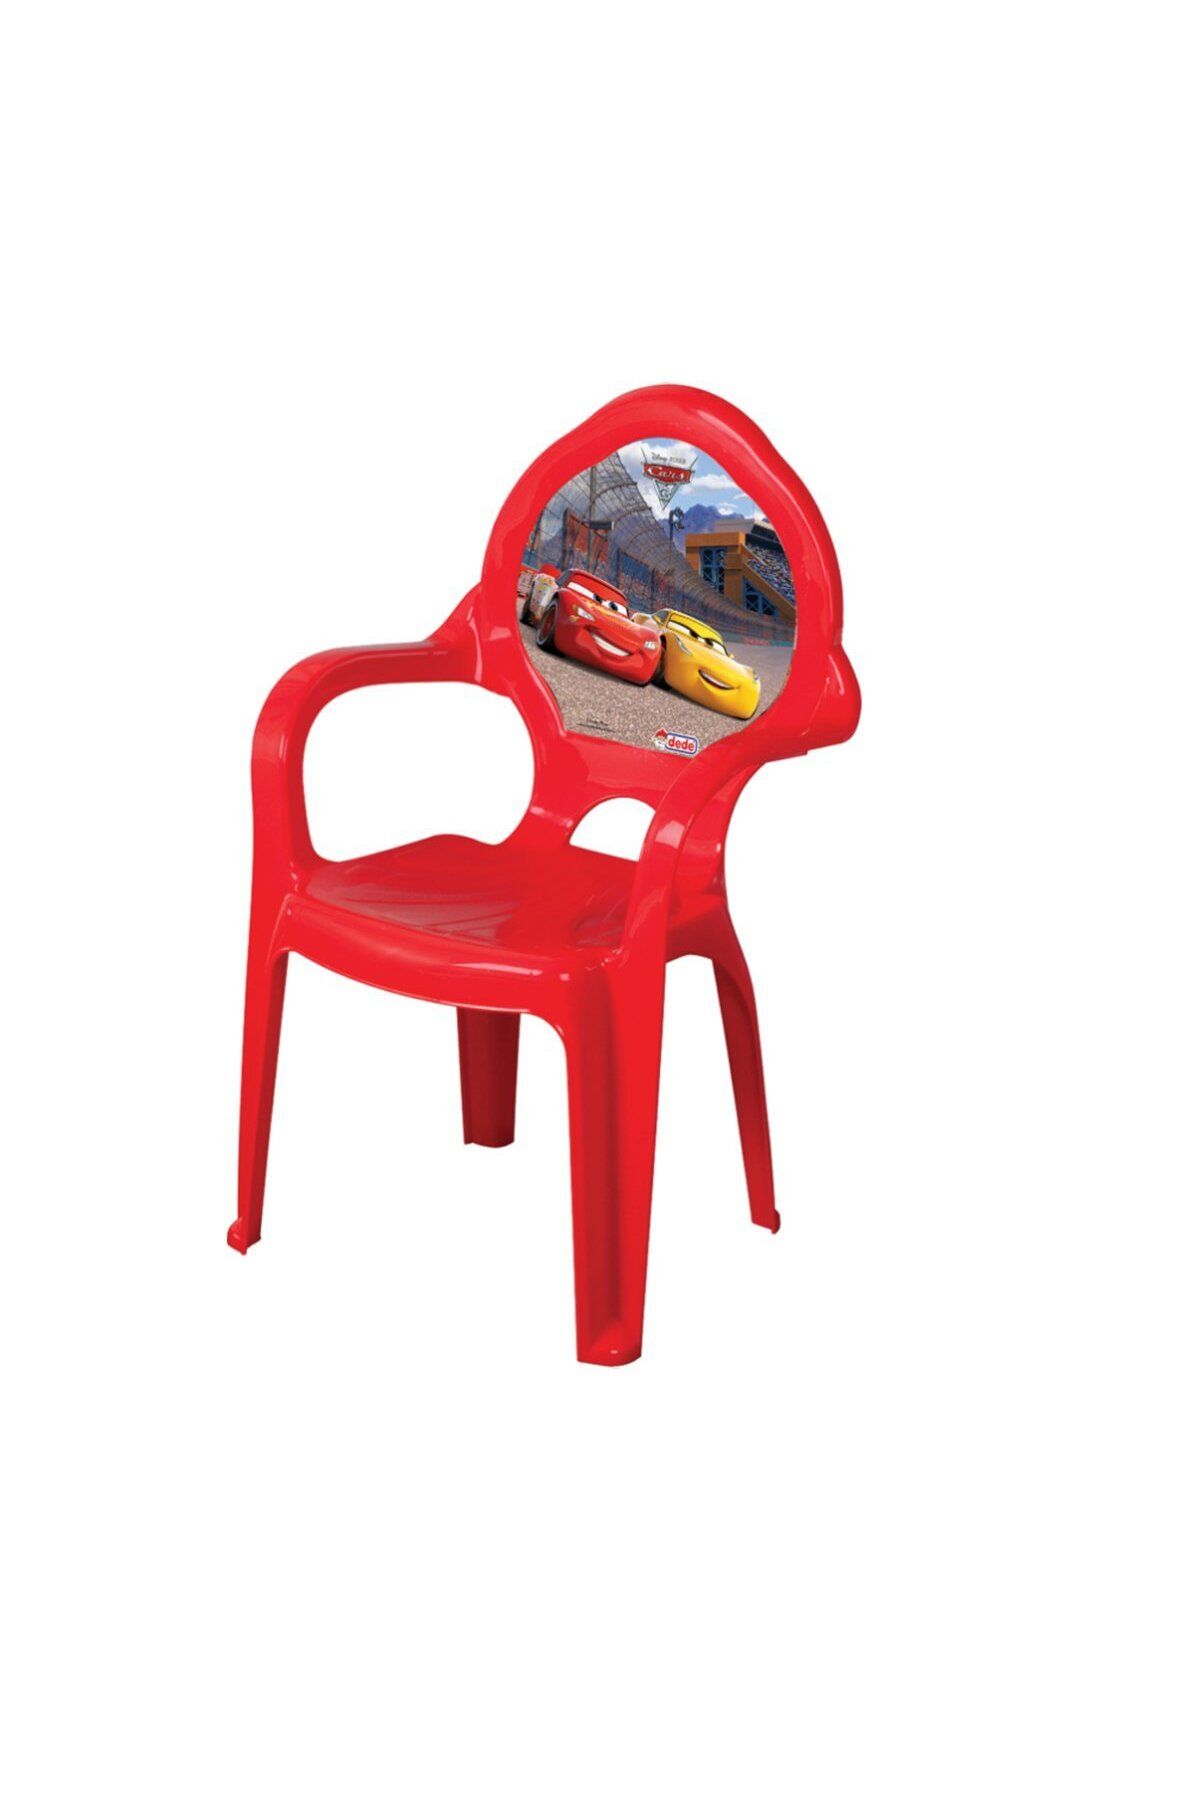 Fen Toys 01807 Dede, Cars Çocuk Sandalyesi